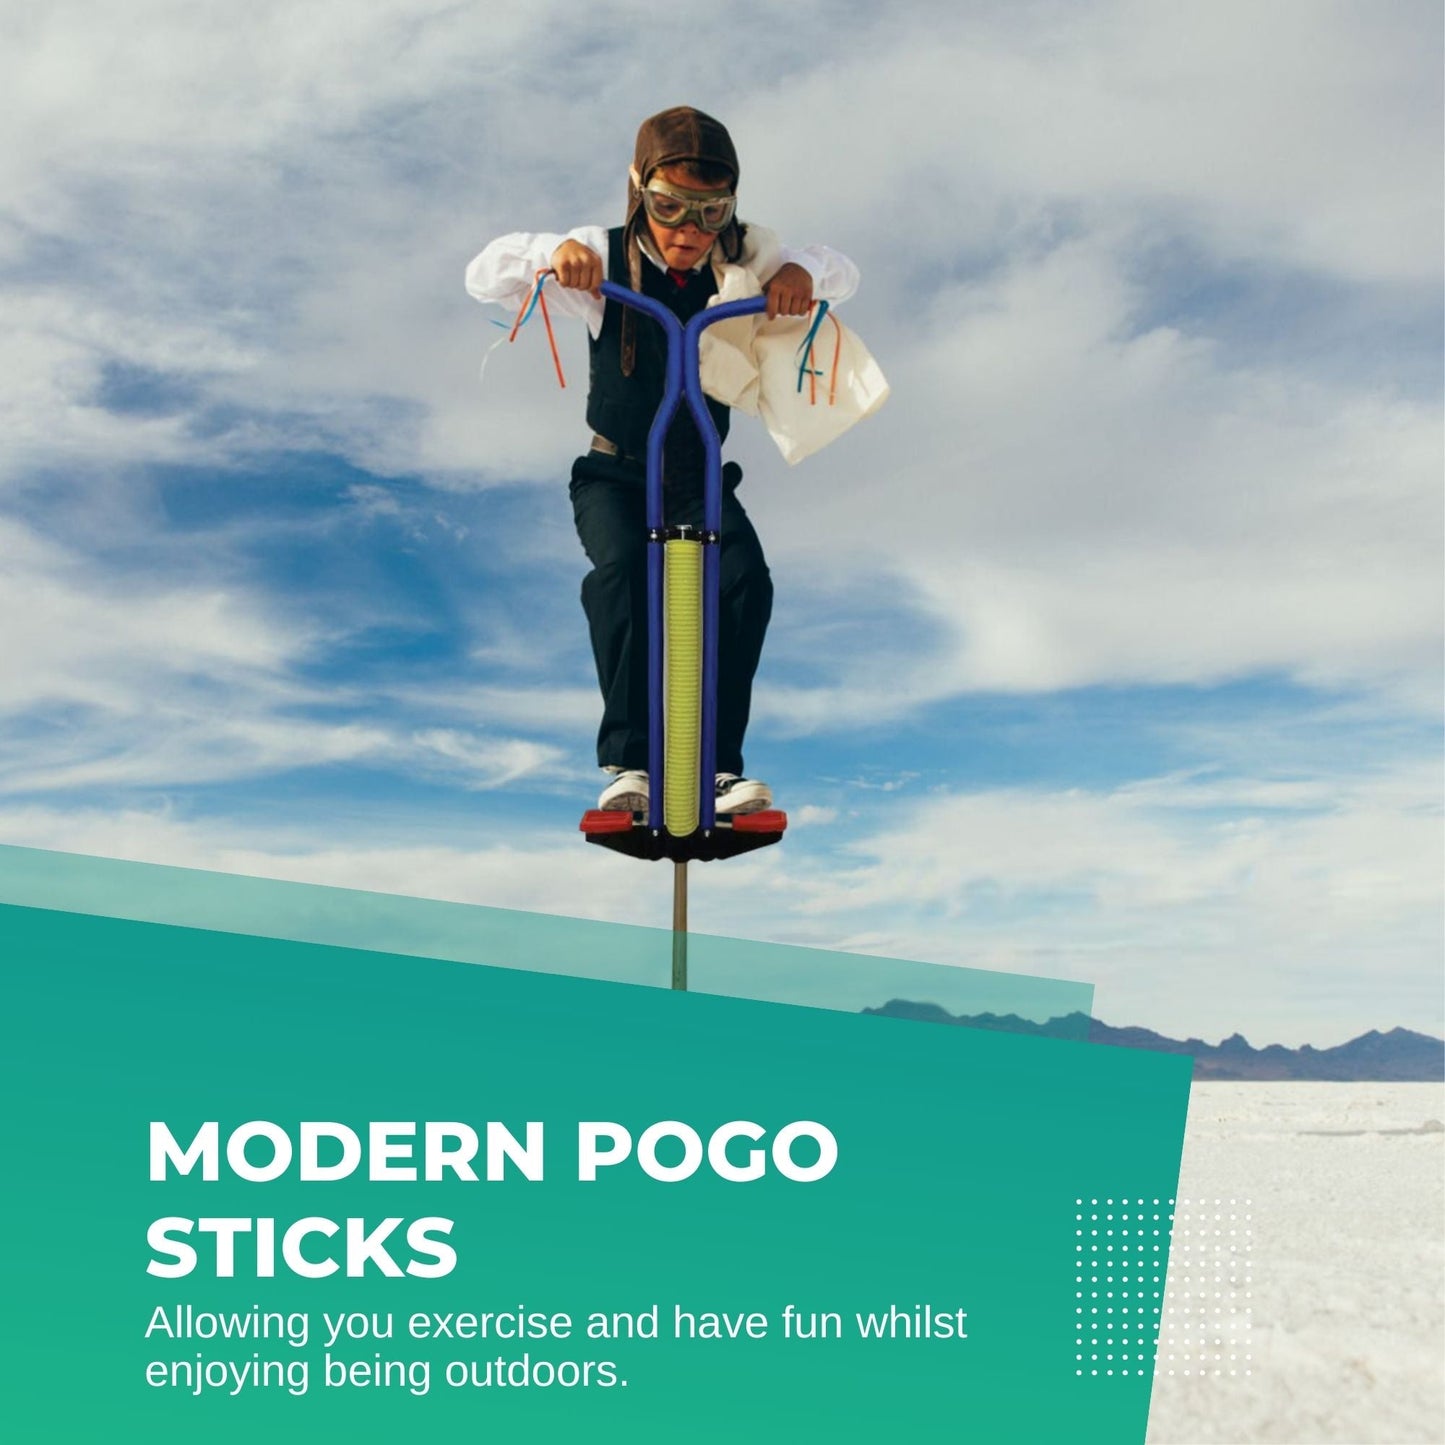 Blue Pogo Stick Kids - Childrens Jumping Jackhammer Exercise Hopper Toy